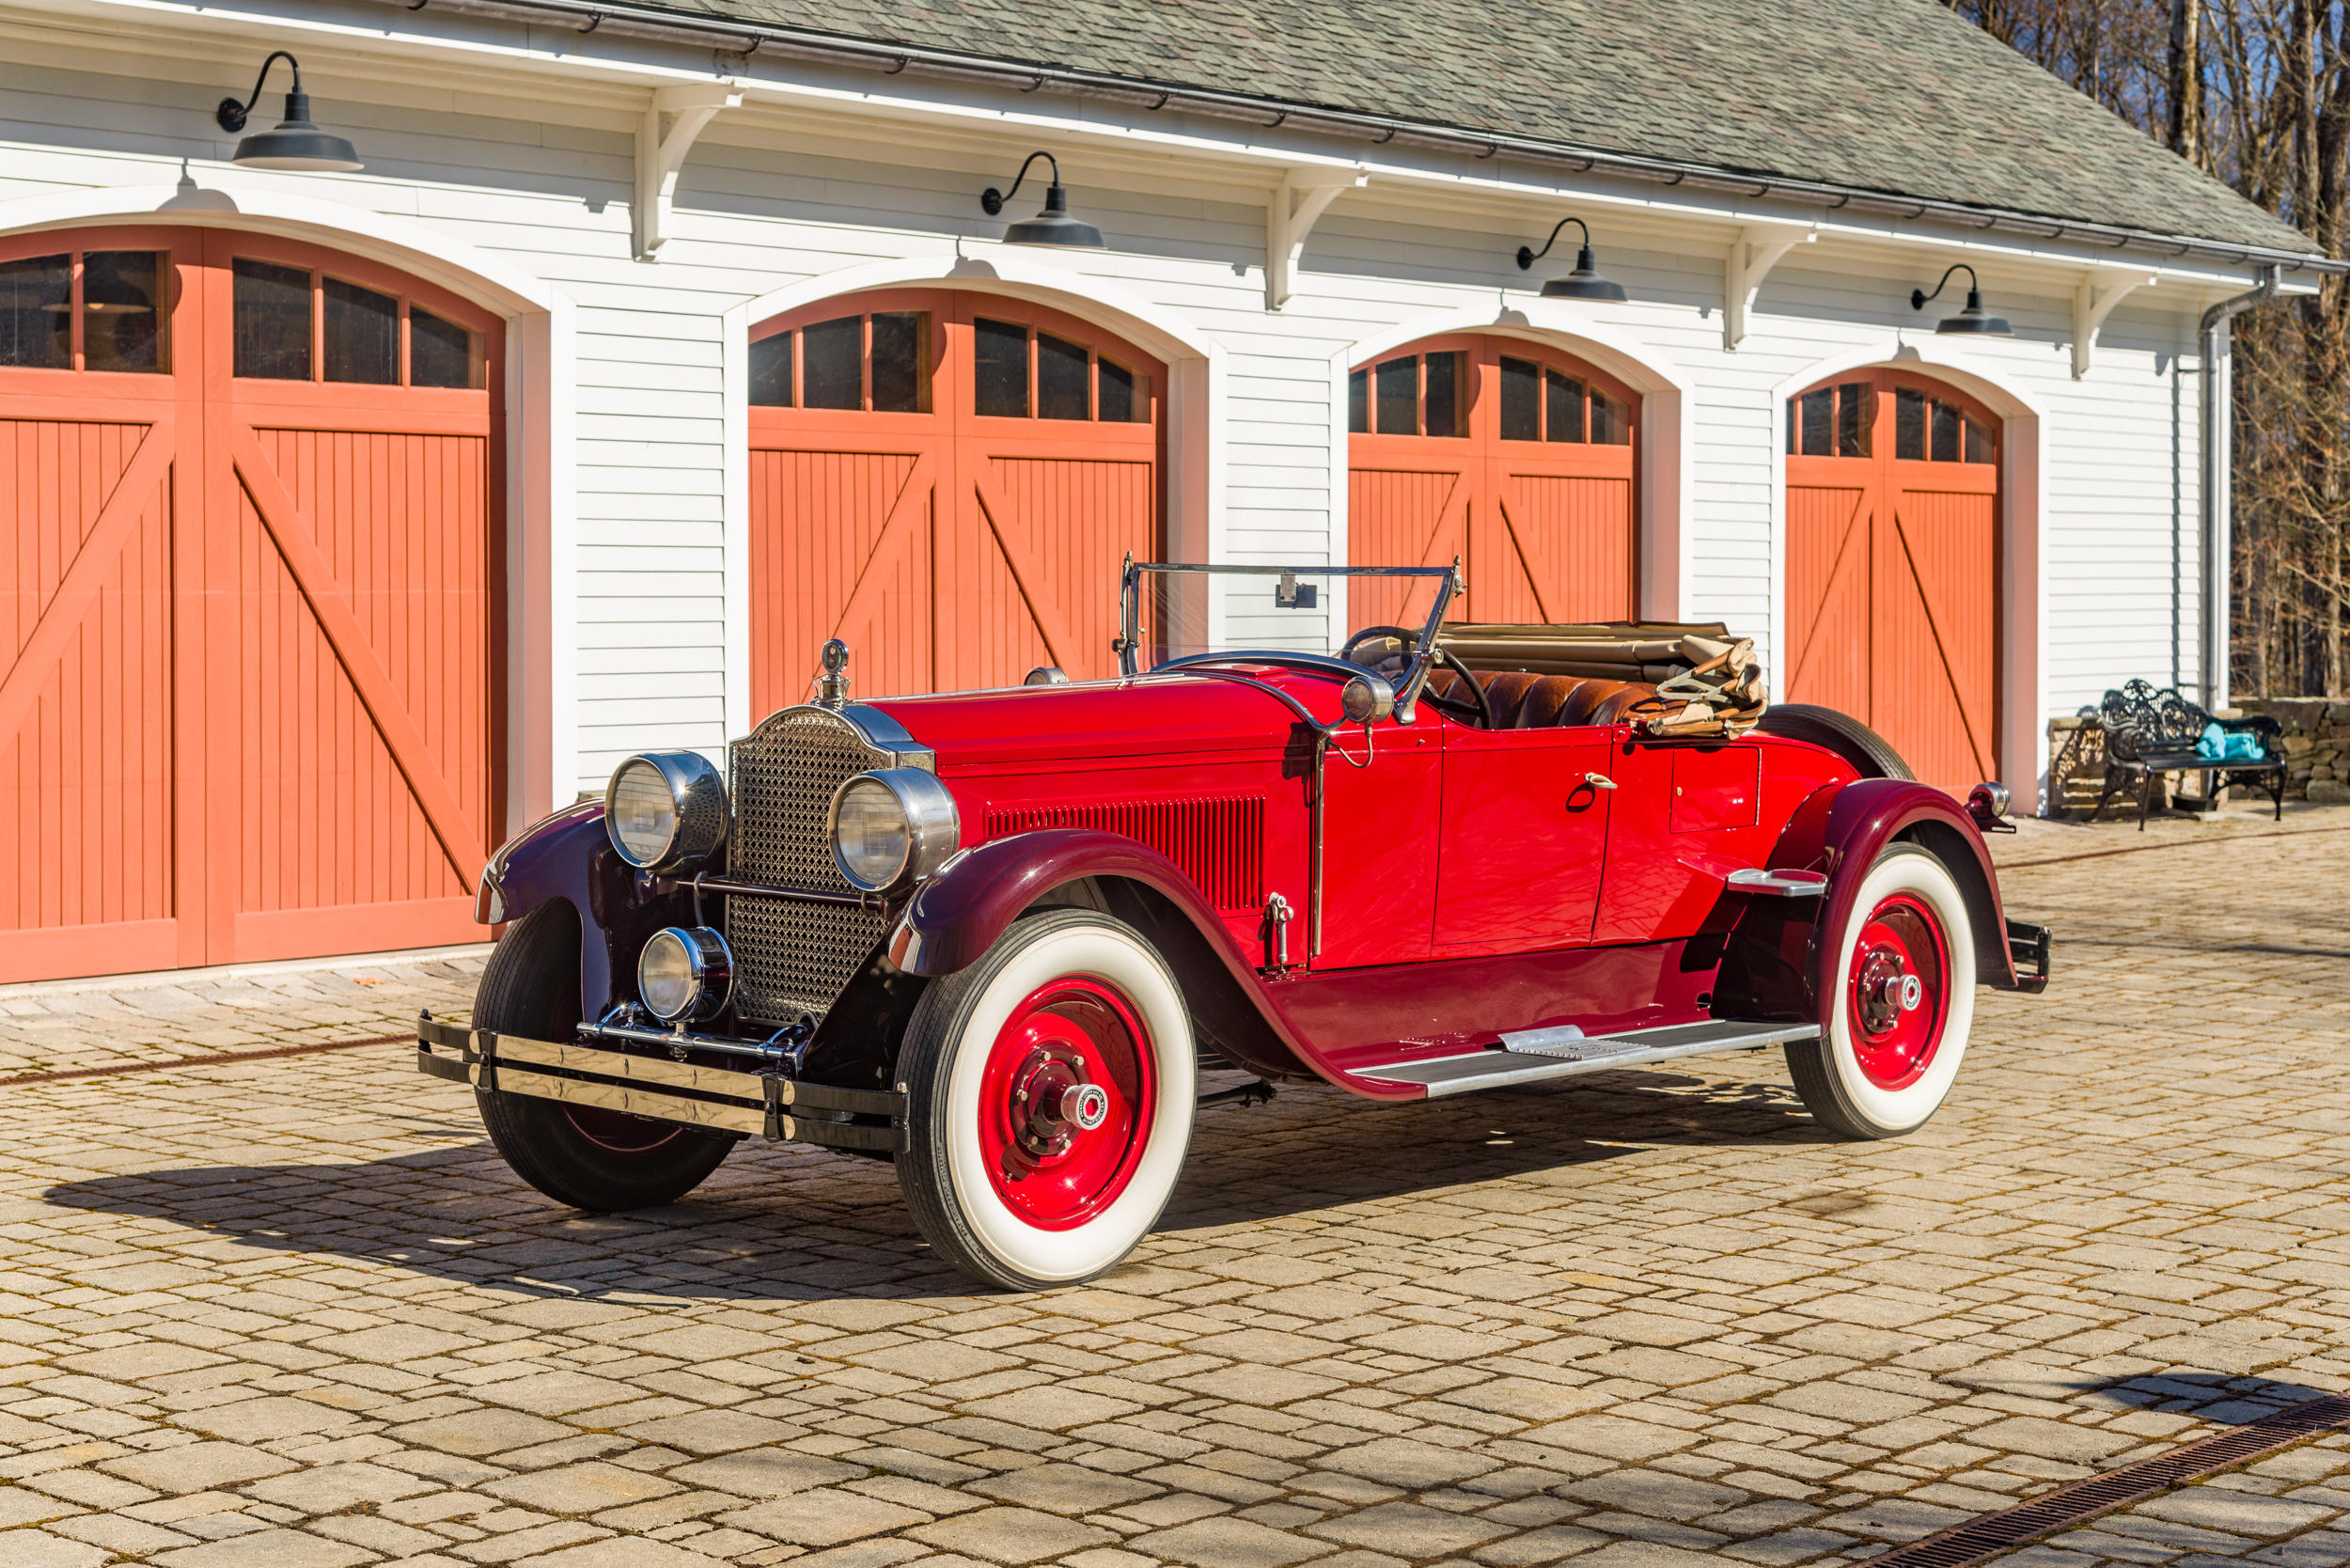 1926 Packard Standard Eight Model 236 Roadster, Packard, Packard Eight